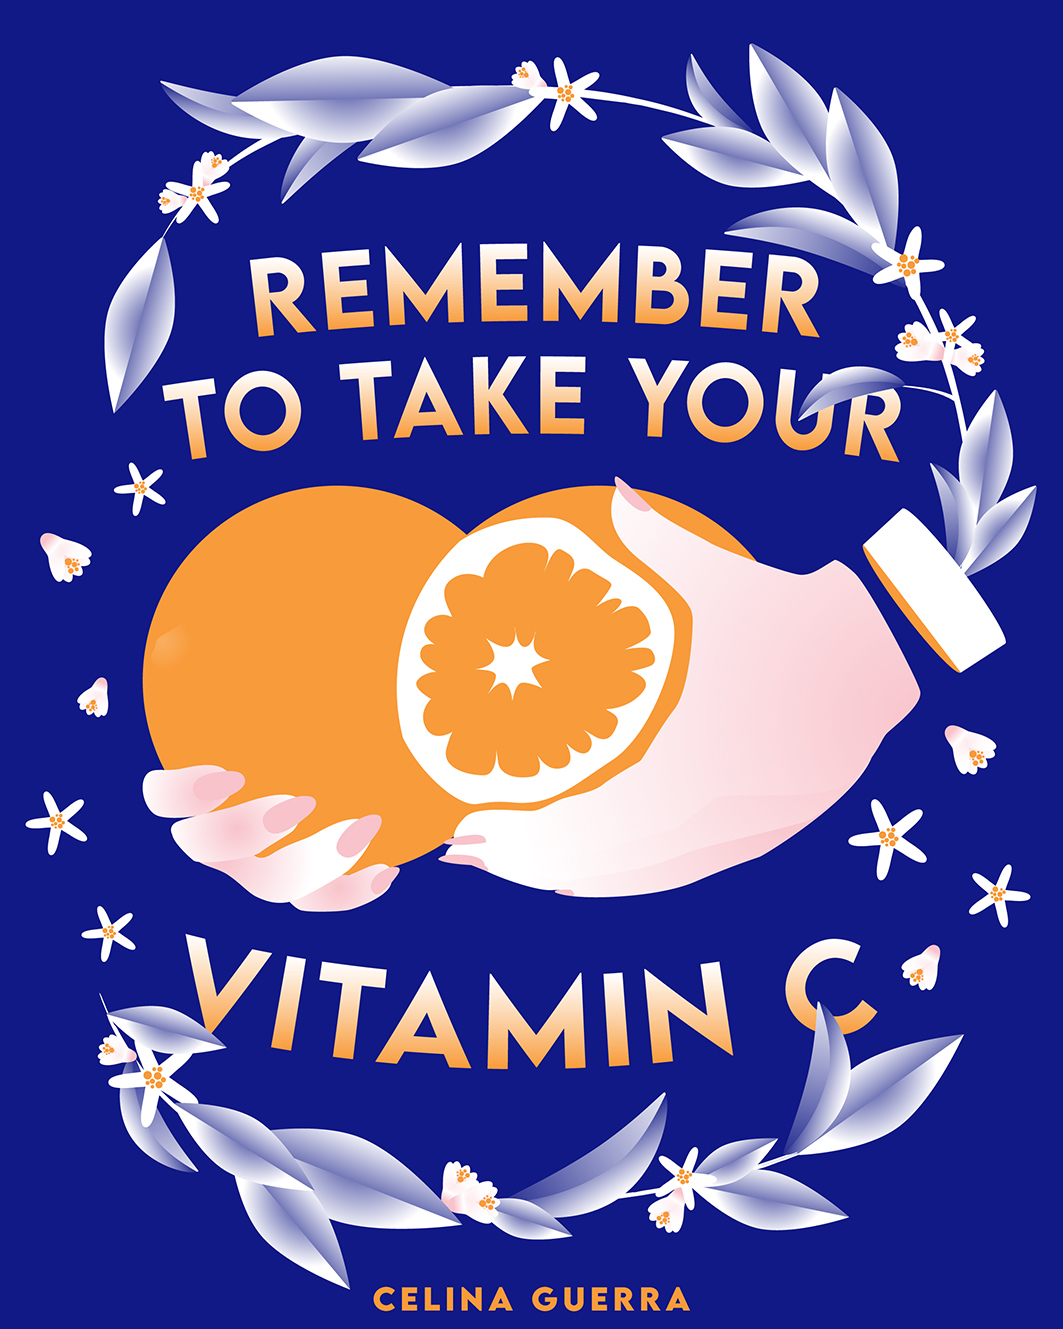 Vitamin C - Base-02 HIVE.jpg